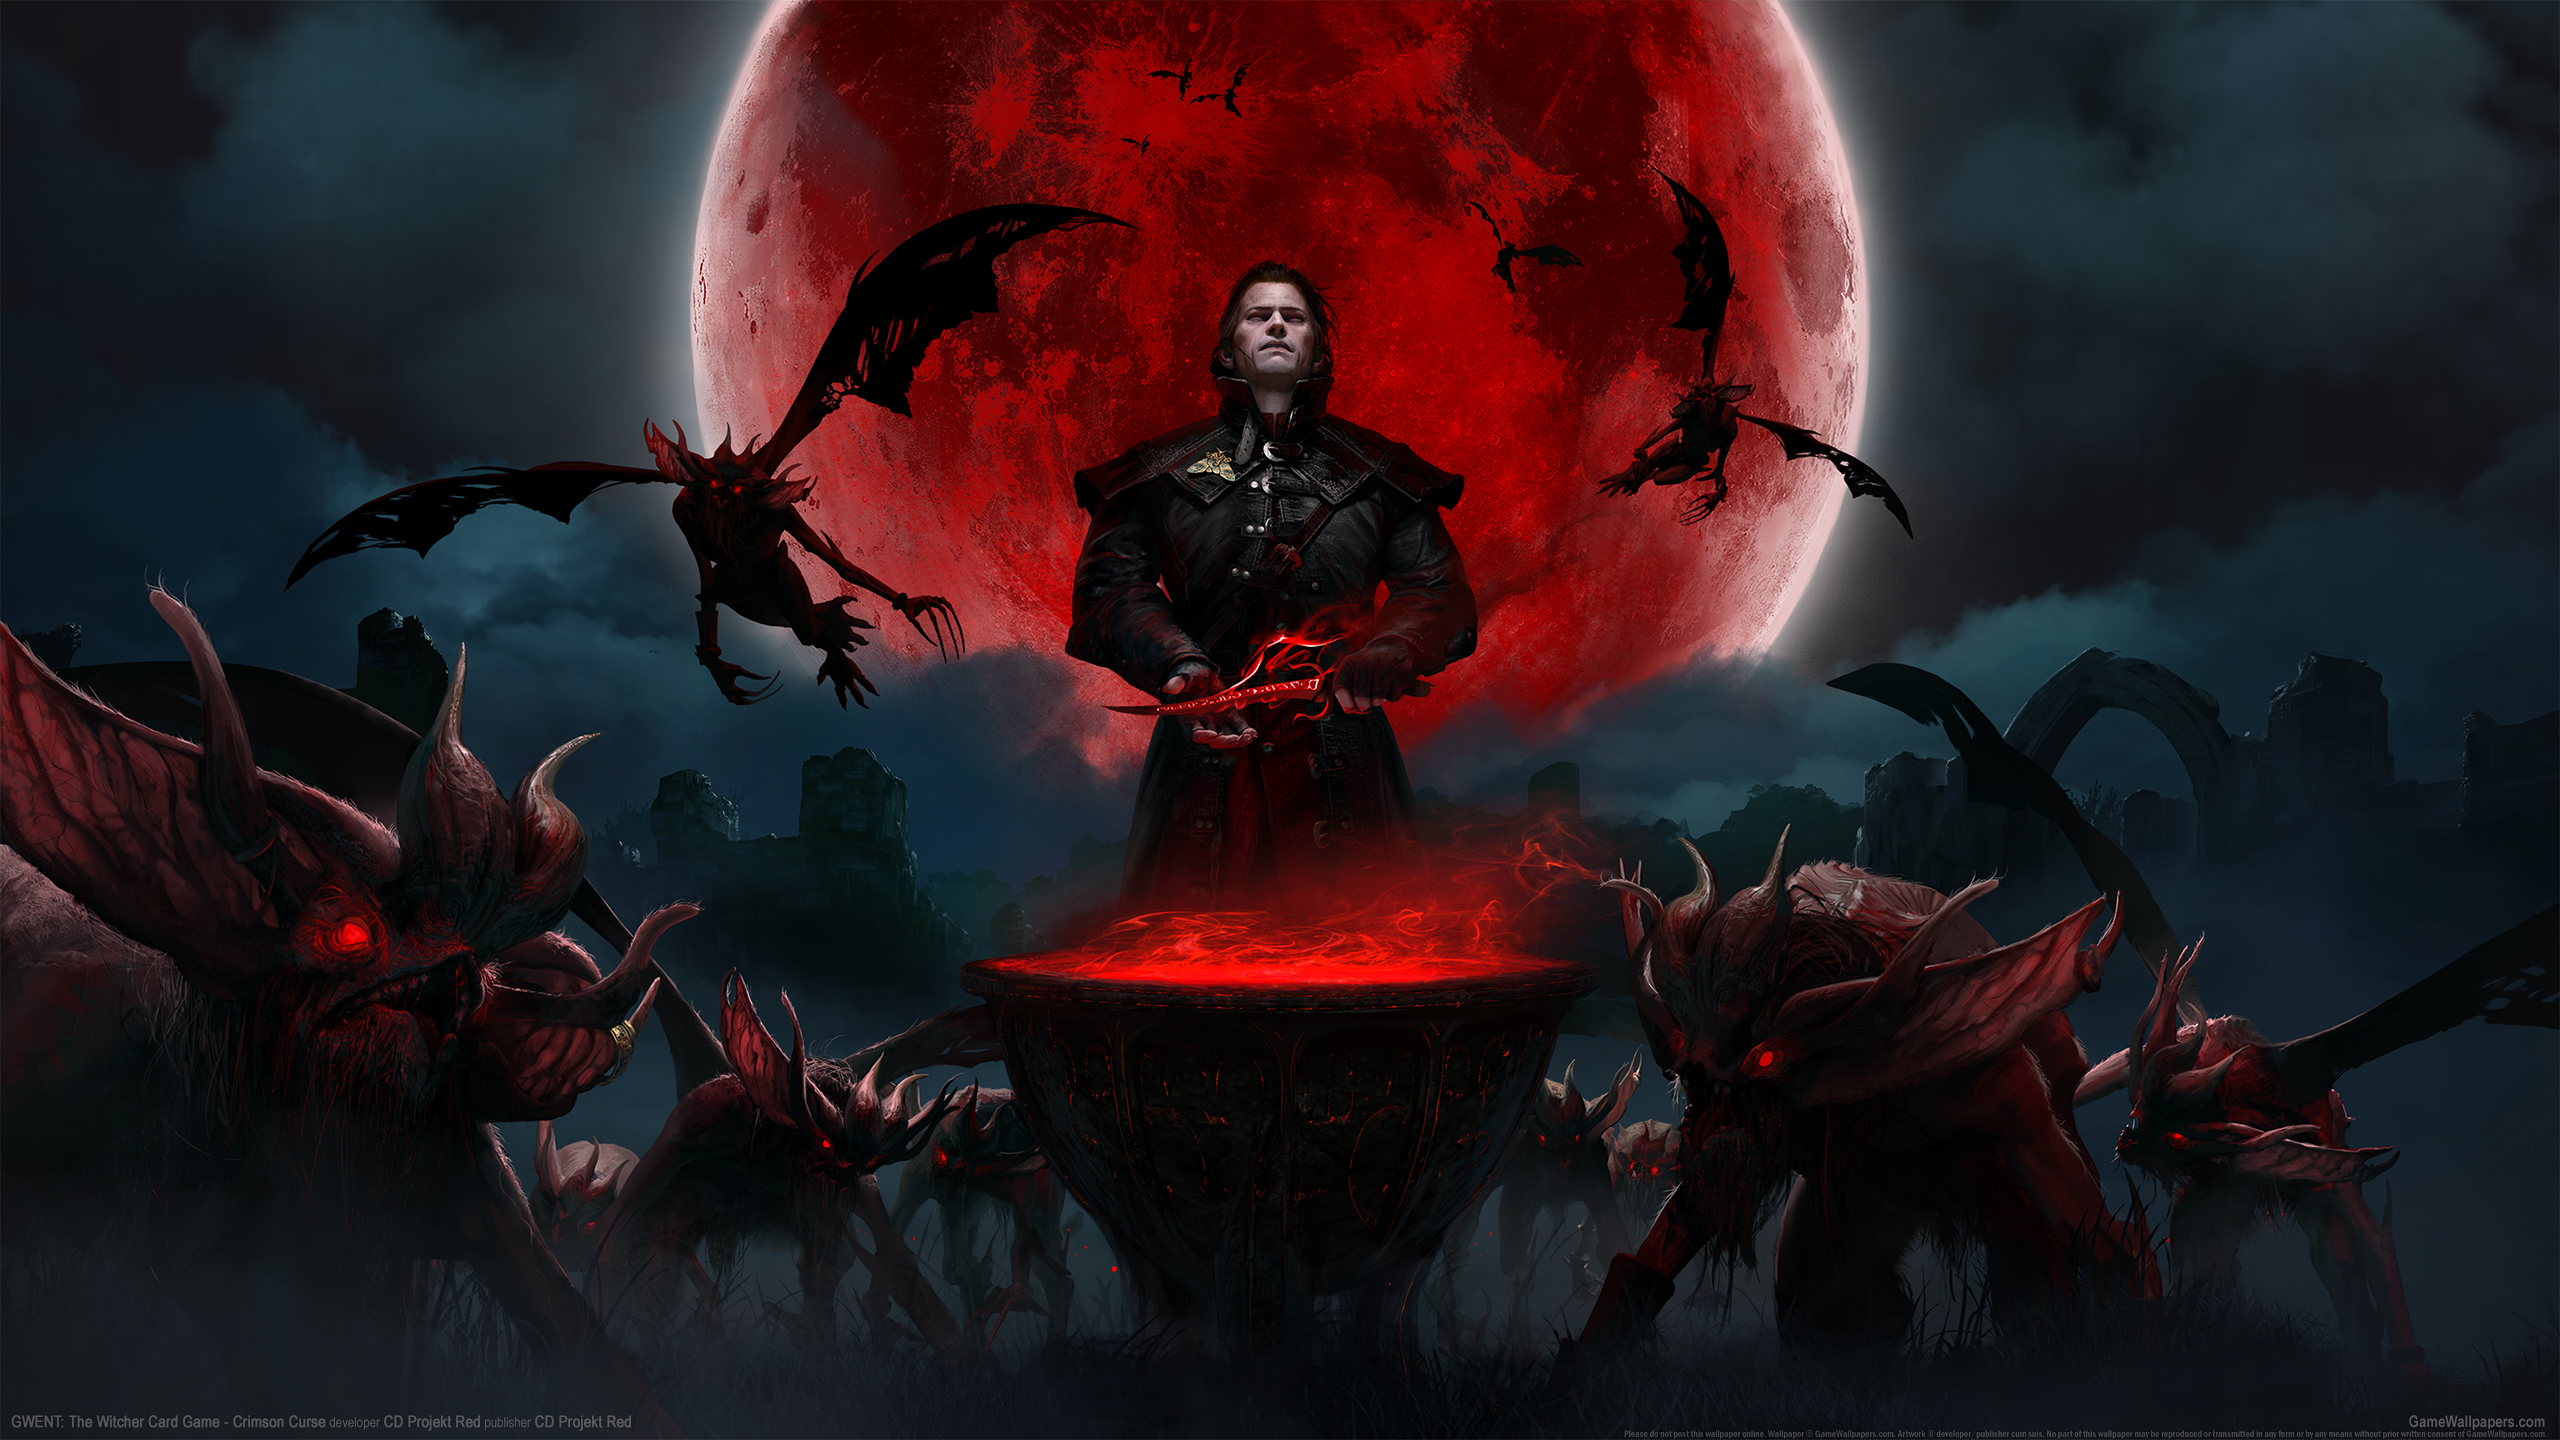 GWENT: The Witcher Card Game - Crimson Curse 2560x1440 fondo de escritorio 01